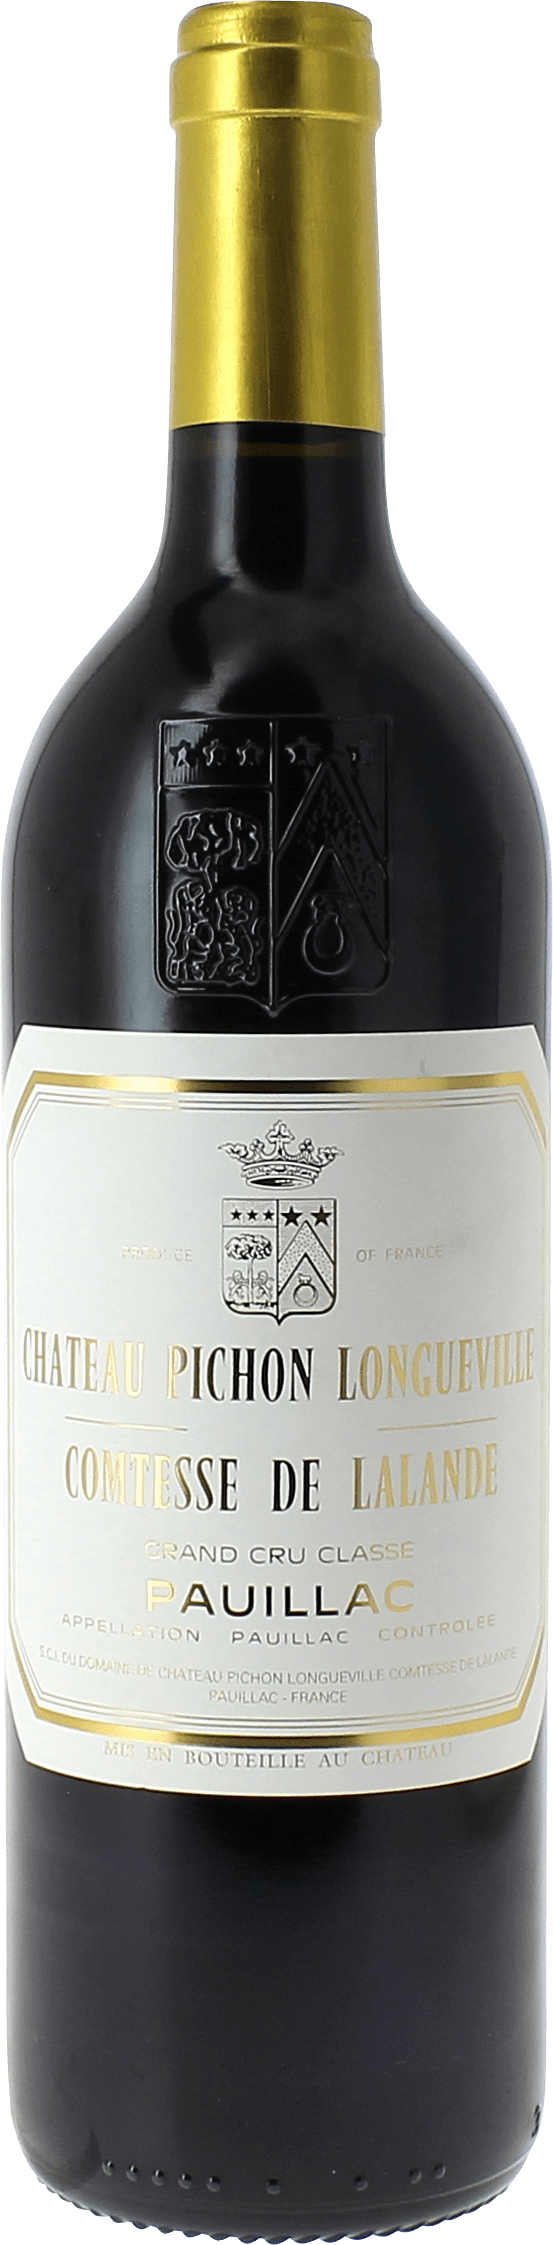 Pichon comtesse de lalande 1983 2me Grand cru class Pauillac, Bordeaux rouge